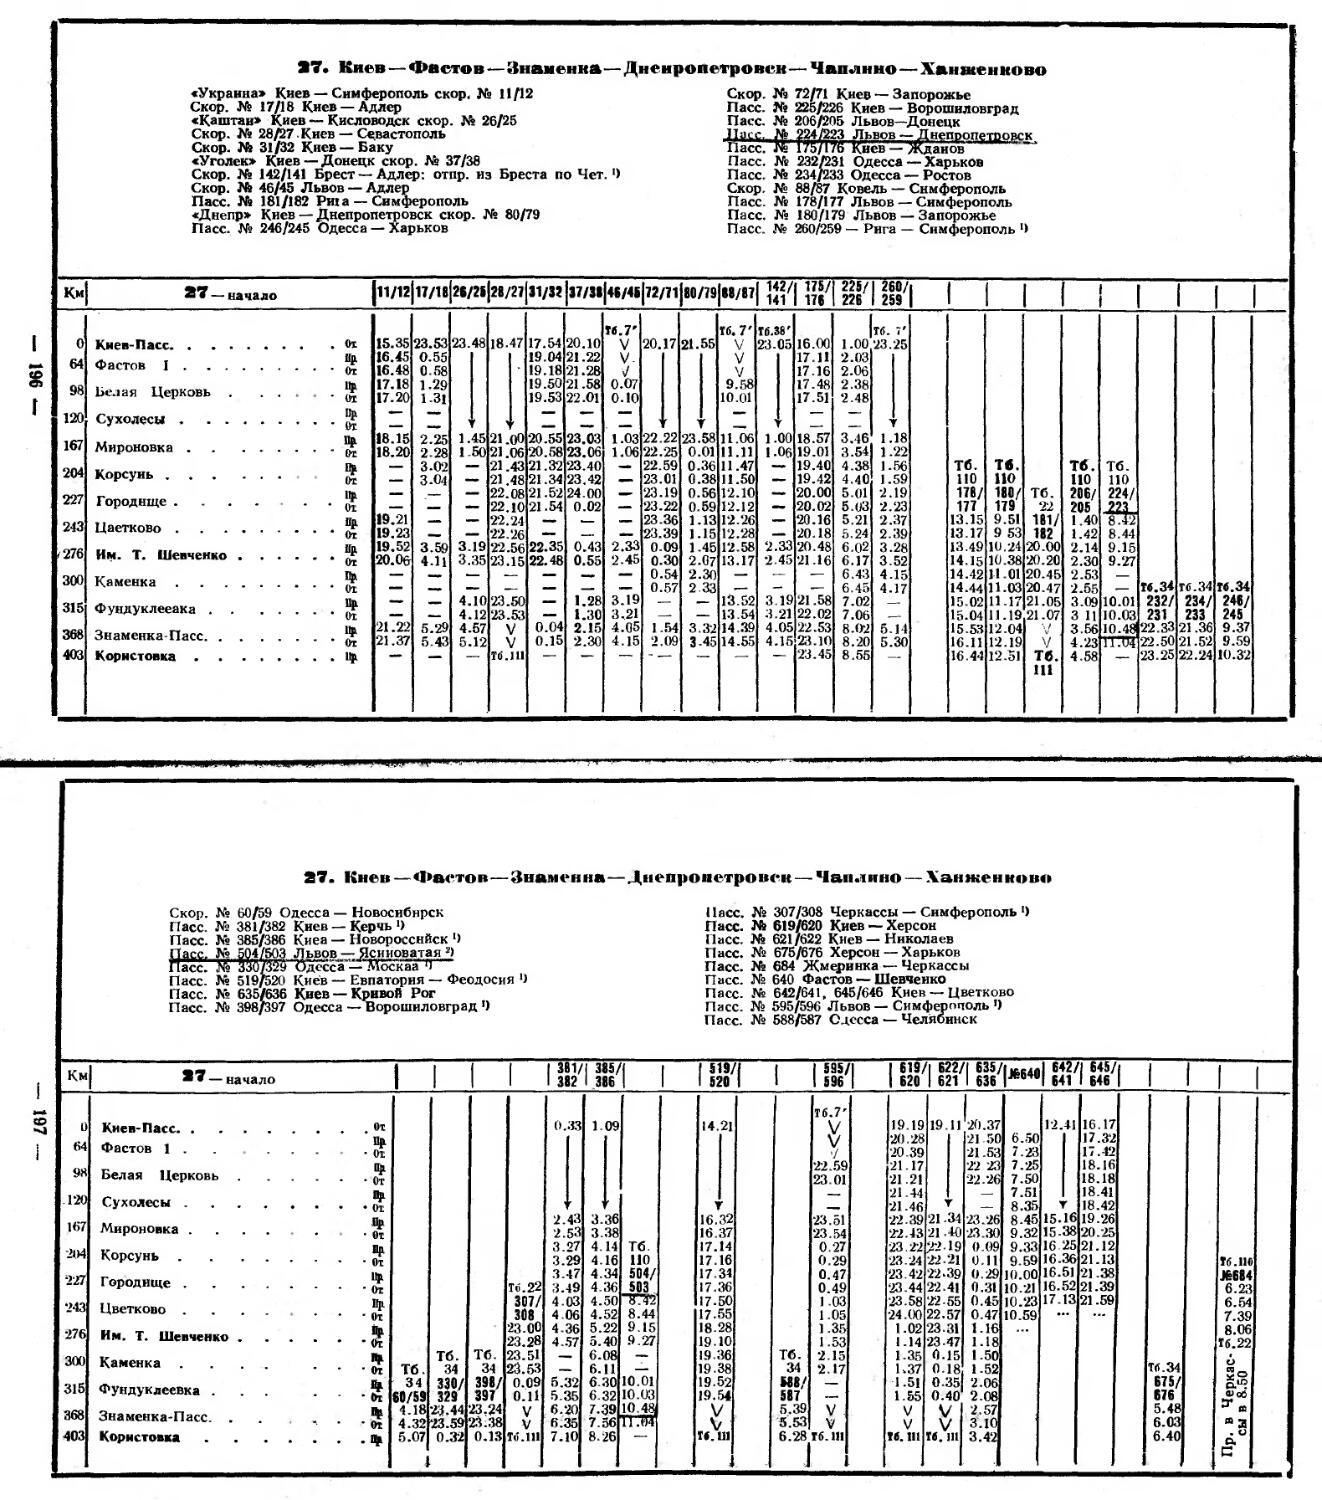 Расписание движения поездов волгограда